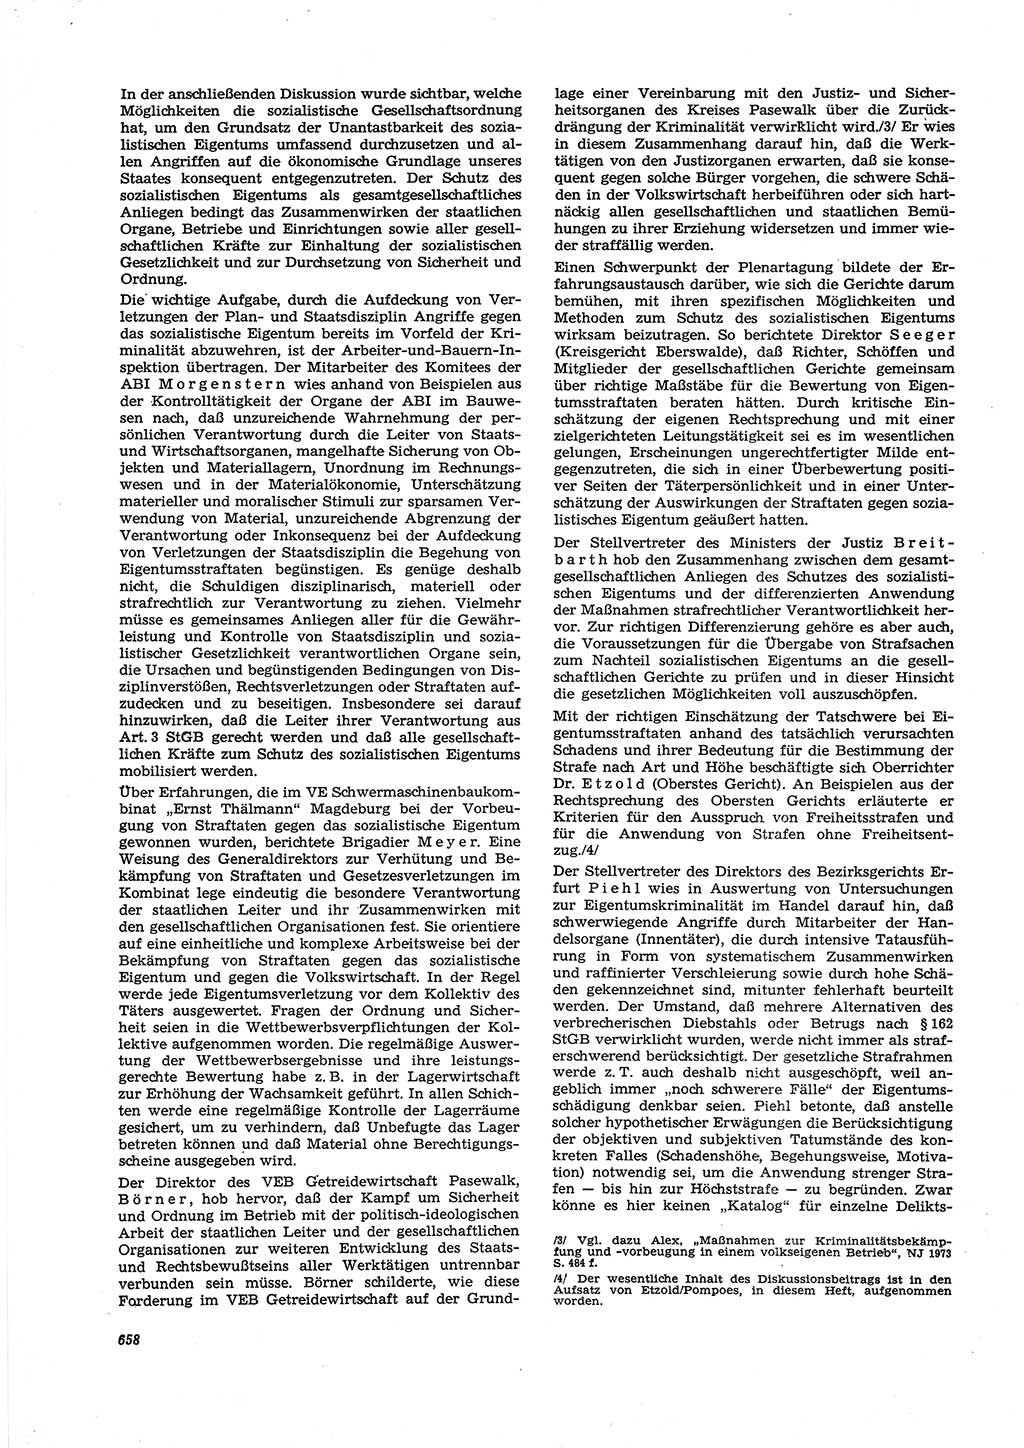 Neue Justiz (NJ), Zeitschrift für Recht und Rechtswissenschaft [Deutsche Demokratische Republik (DDR)], 27. Jahrgang 1973, Seite 658 (NJ DDR 1973, S. 658)